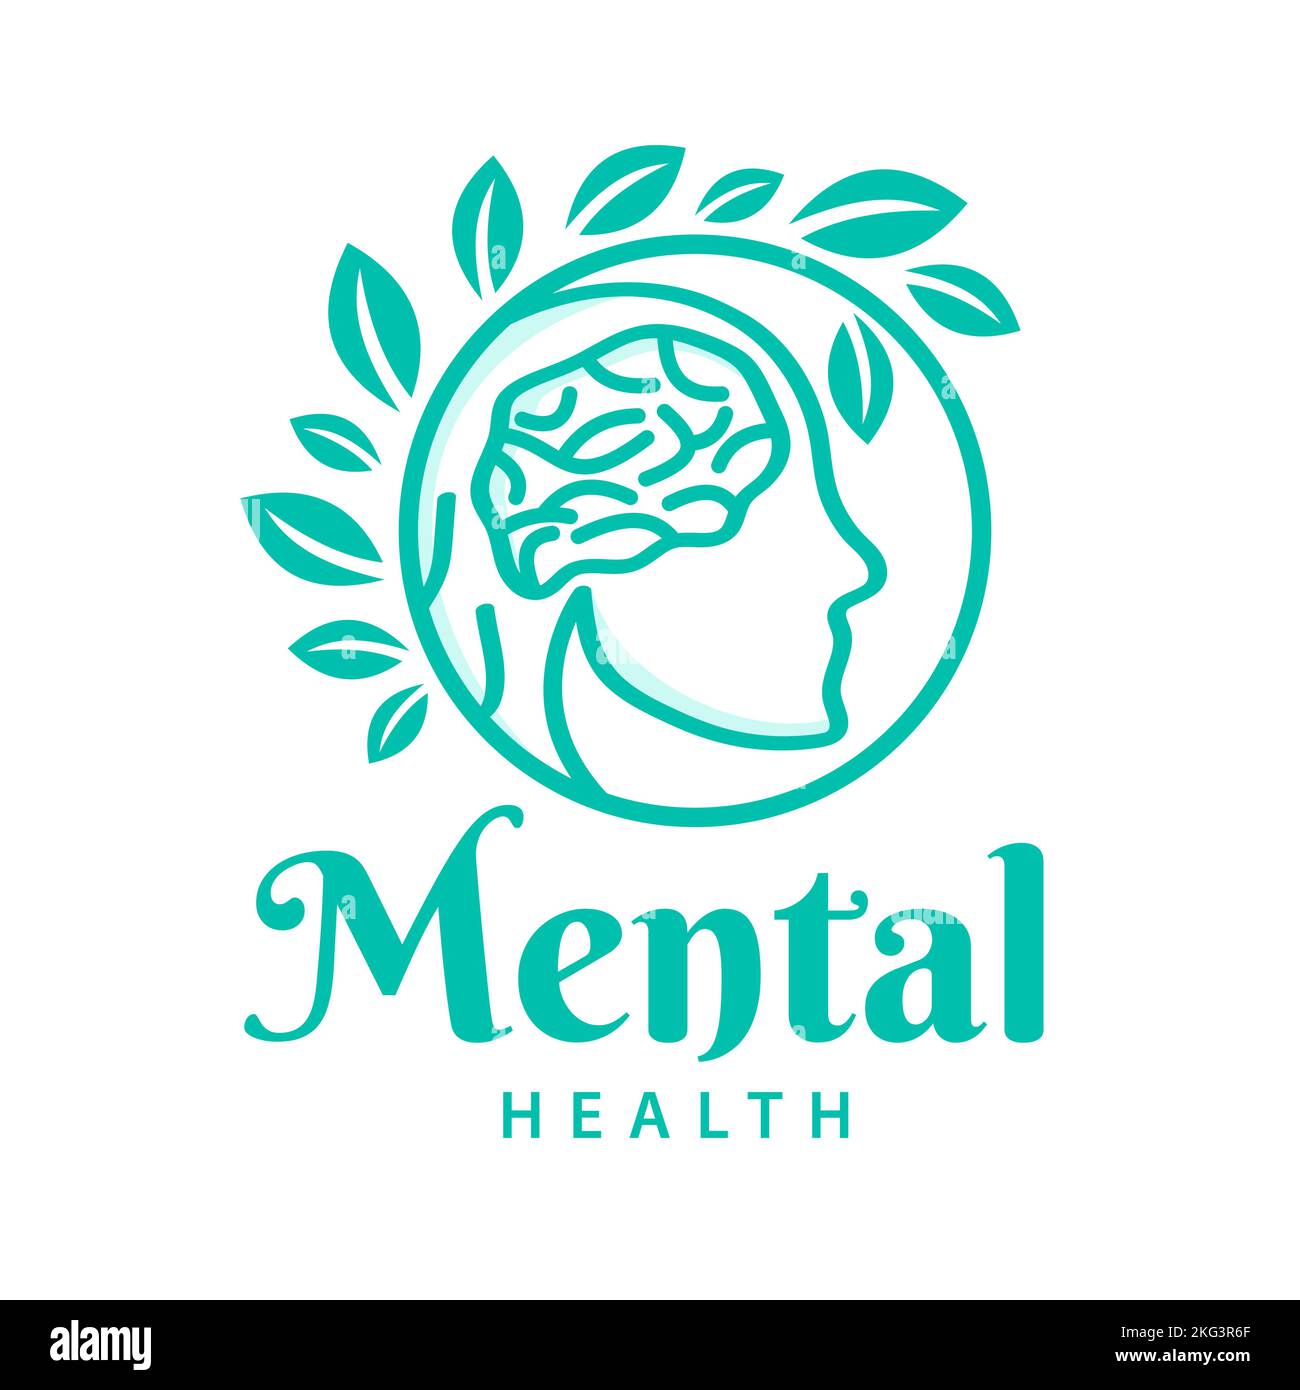 Mental Health Logo mit Gehirn und grünen Blättern. Vektor-Konzept für Krankenhaus, menschlicher Kopf. Anatomie des menschlichen Gehirns Stock Vektor